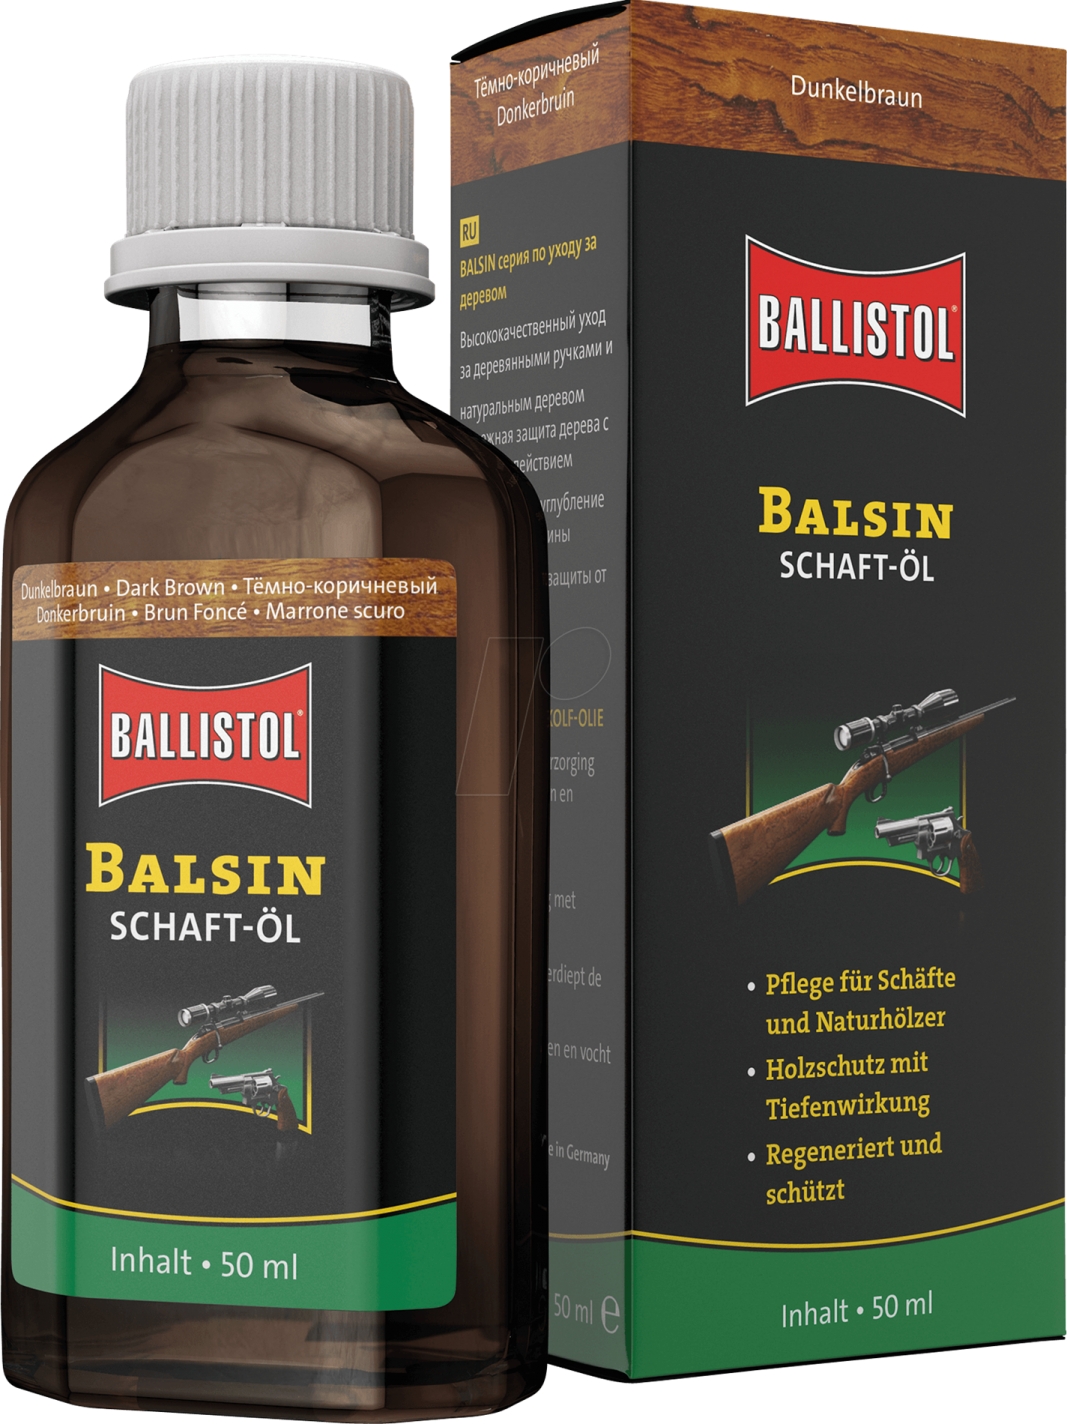 Ballistol Balsin Stockoil Dark Brown Kundak Yağı 50 ml